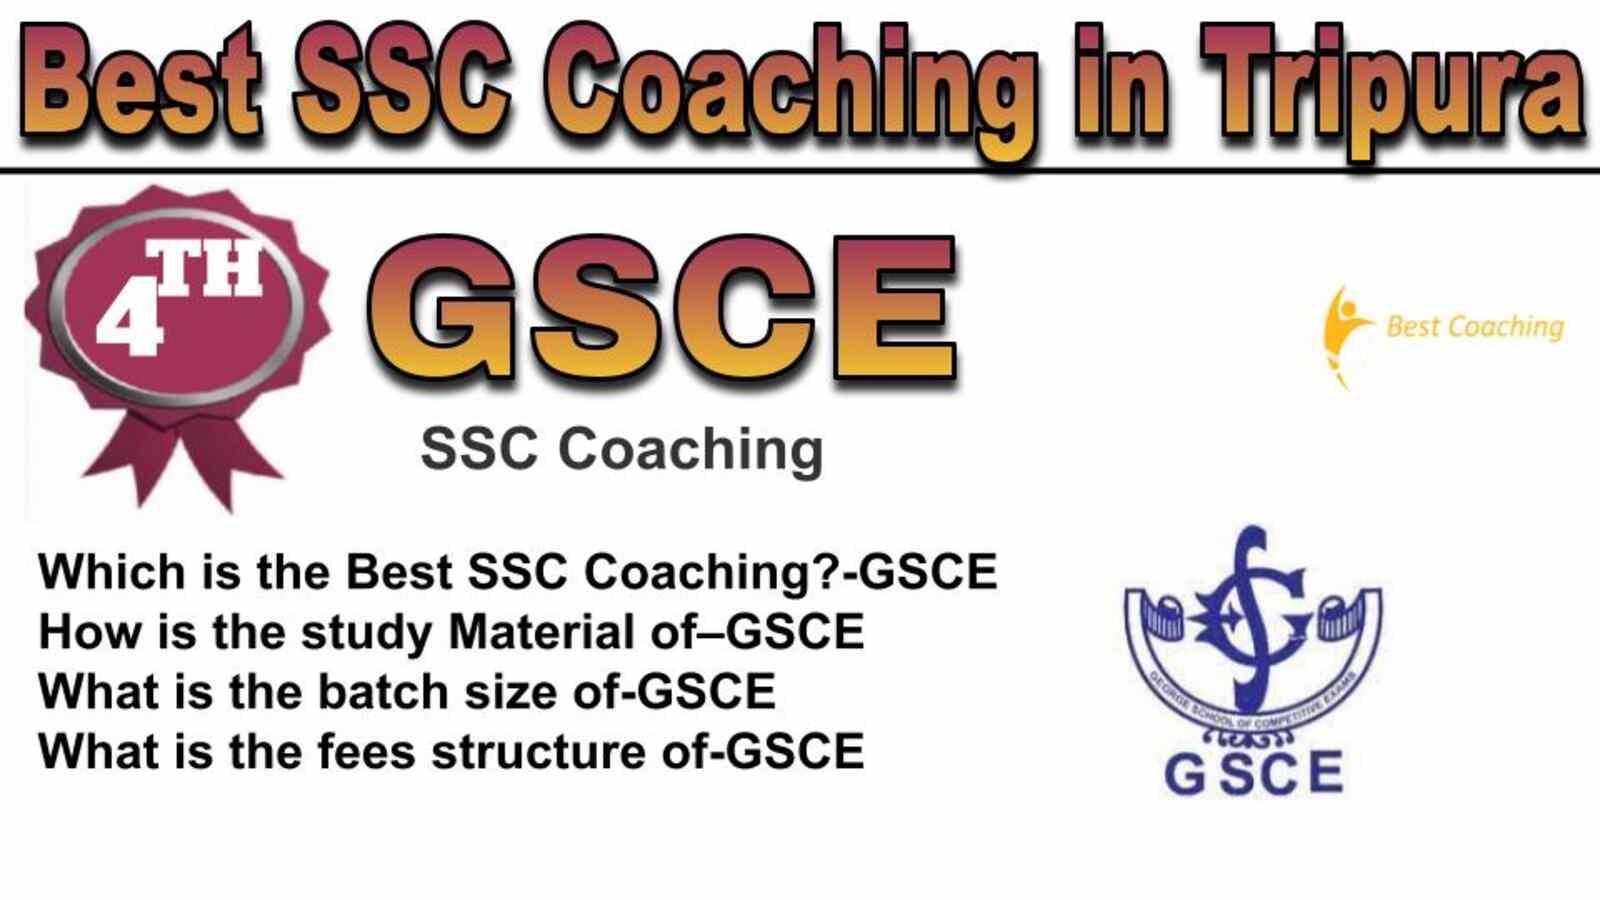 Rank 4 best SSC Coaching in Tripura